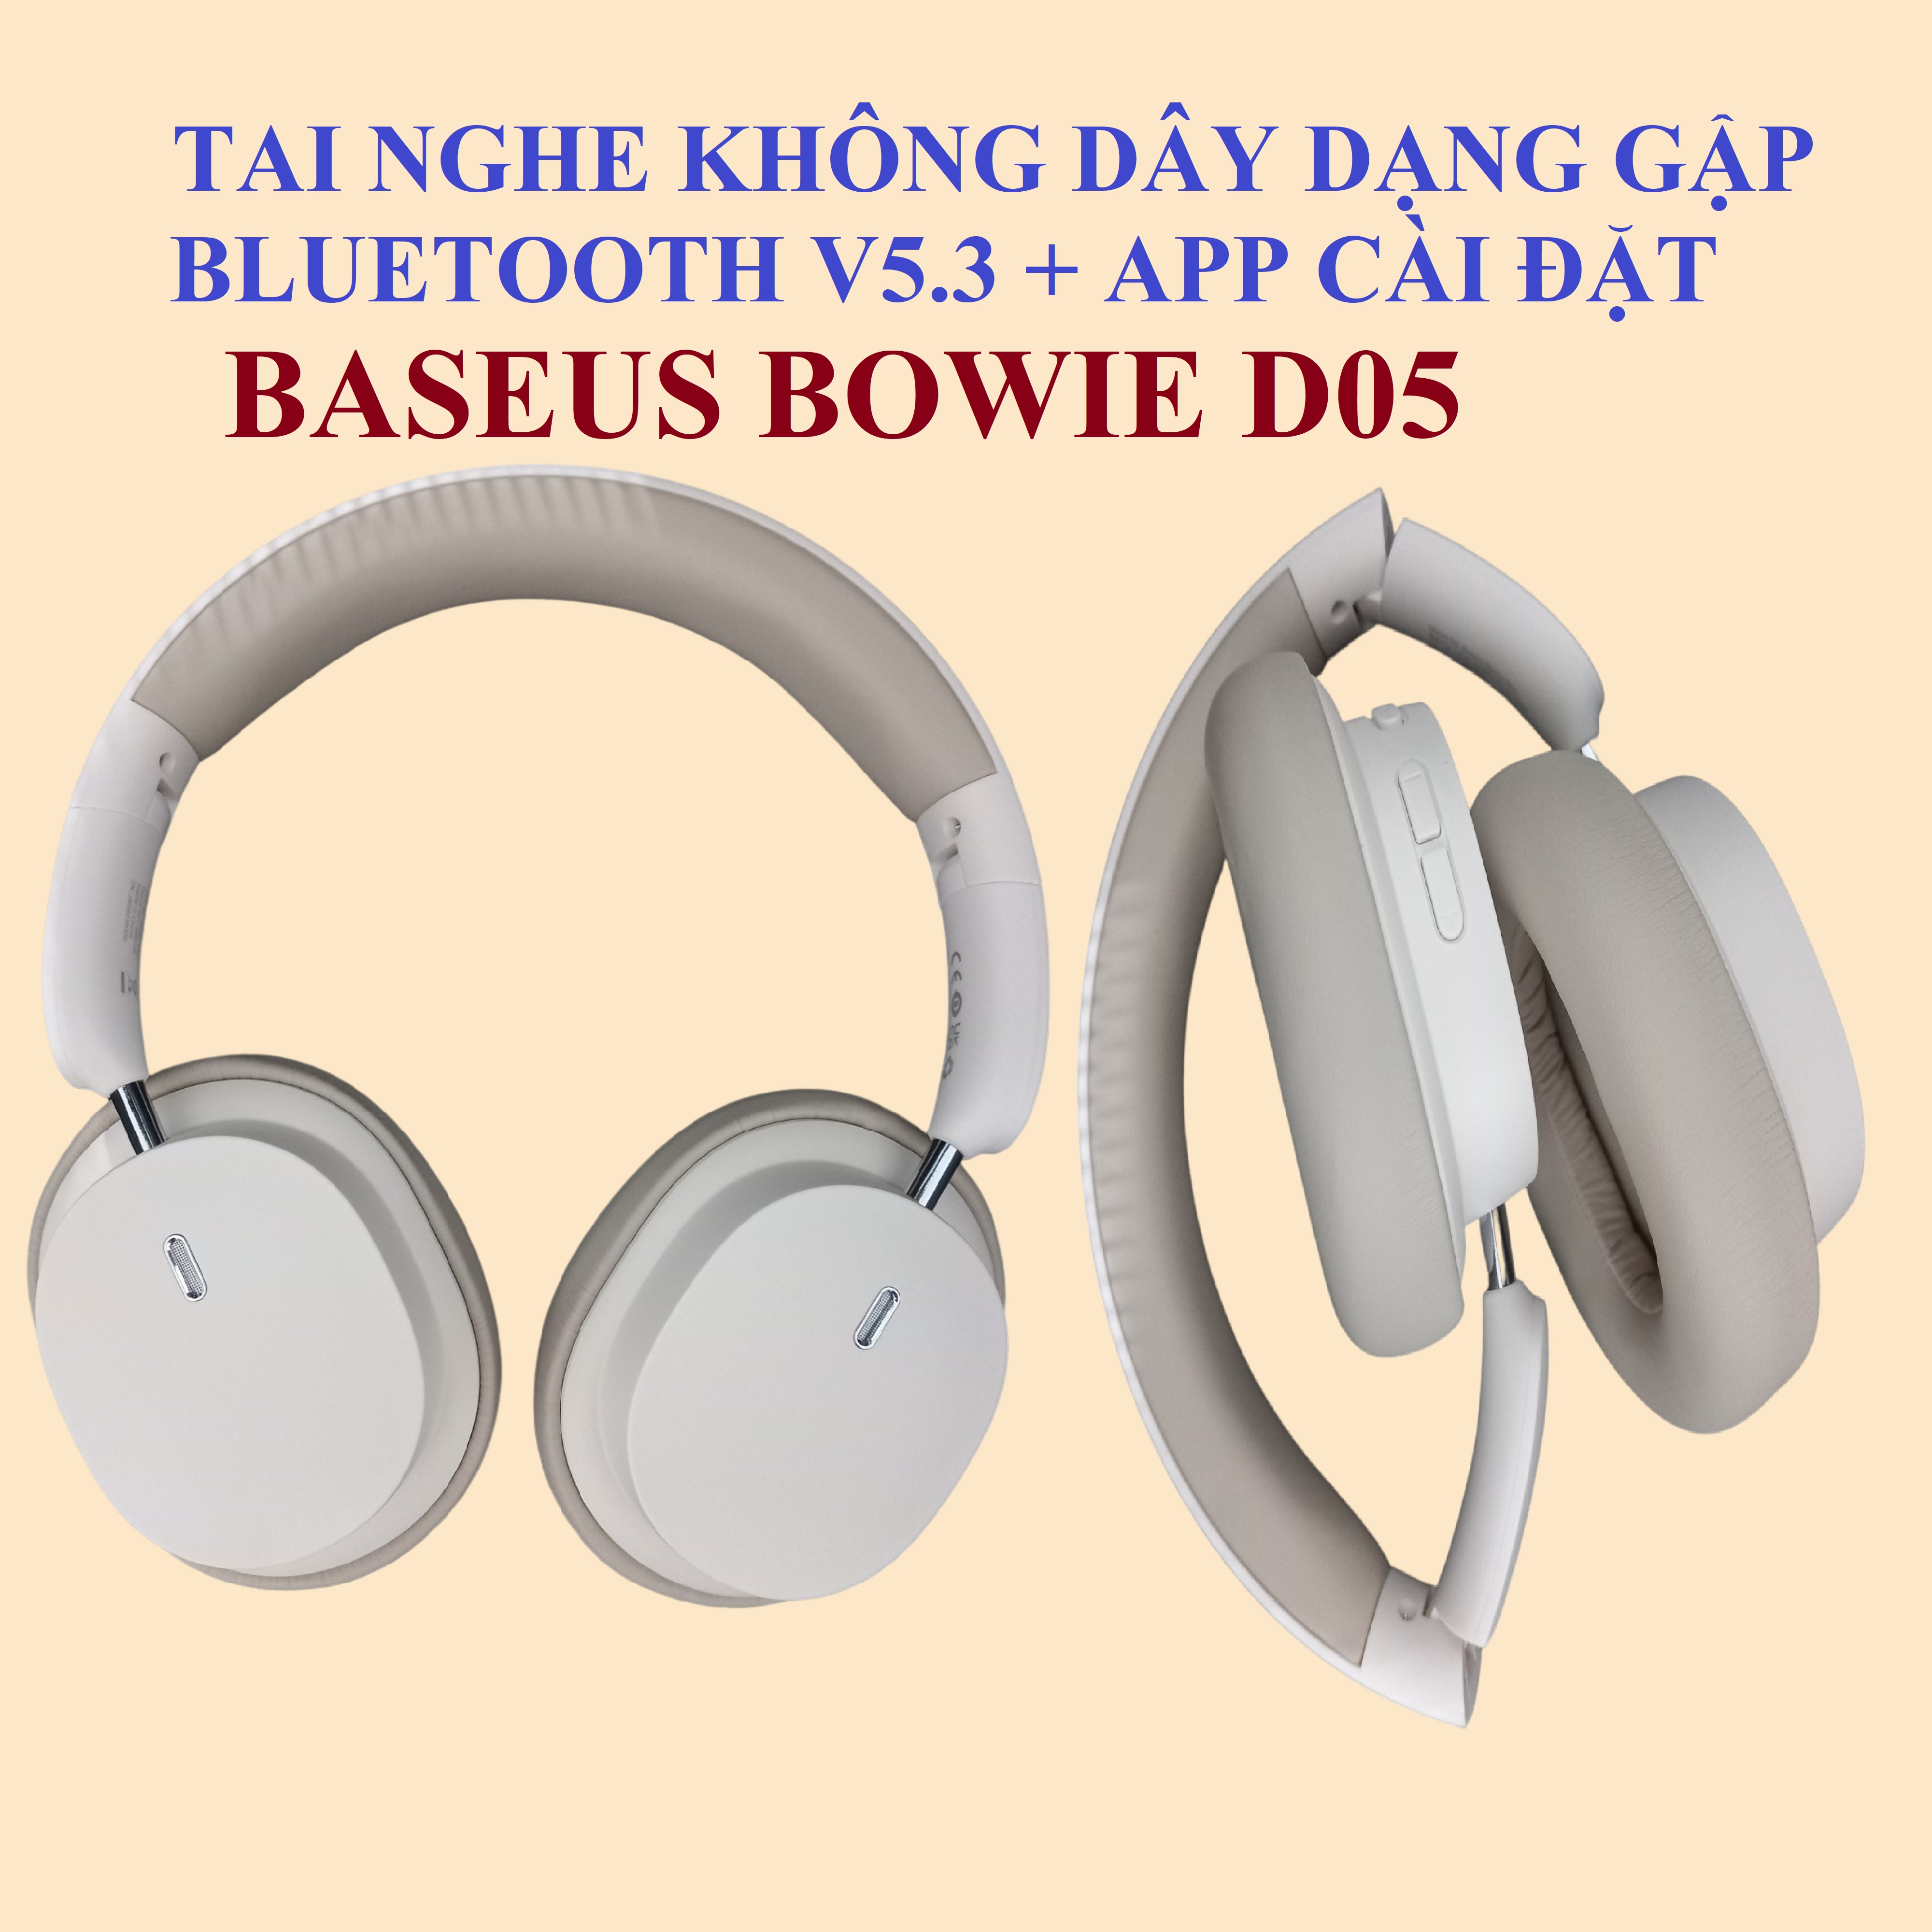 Tai nghe chụp tai không dây dạng gập Bluetooth V5.3 độ trễ thấp App cài đặt Baseus Bowie D05 _ Hàng chính hãng